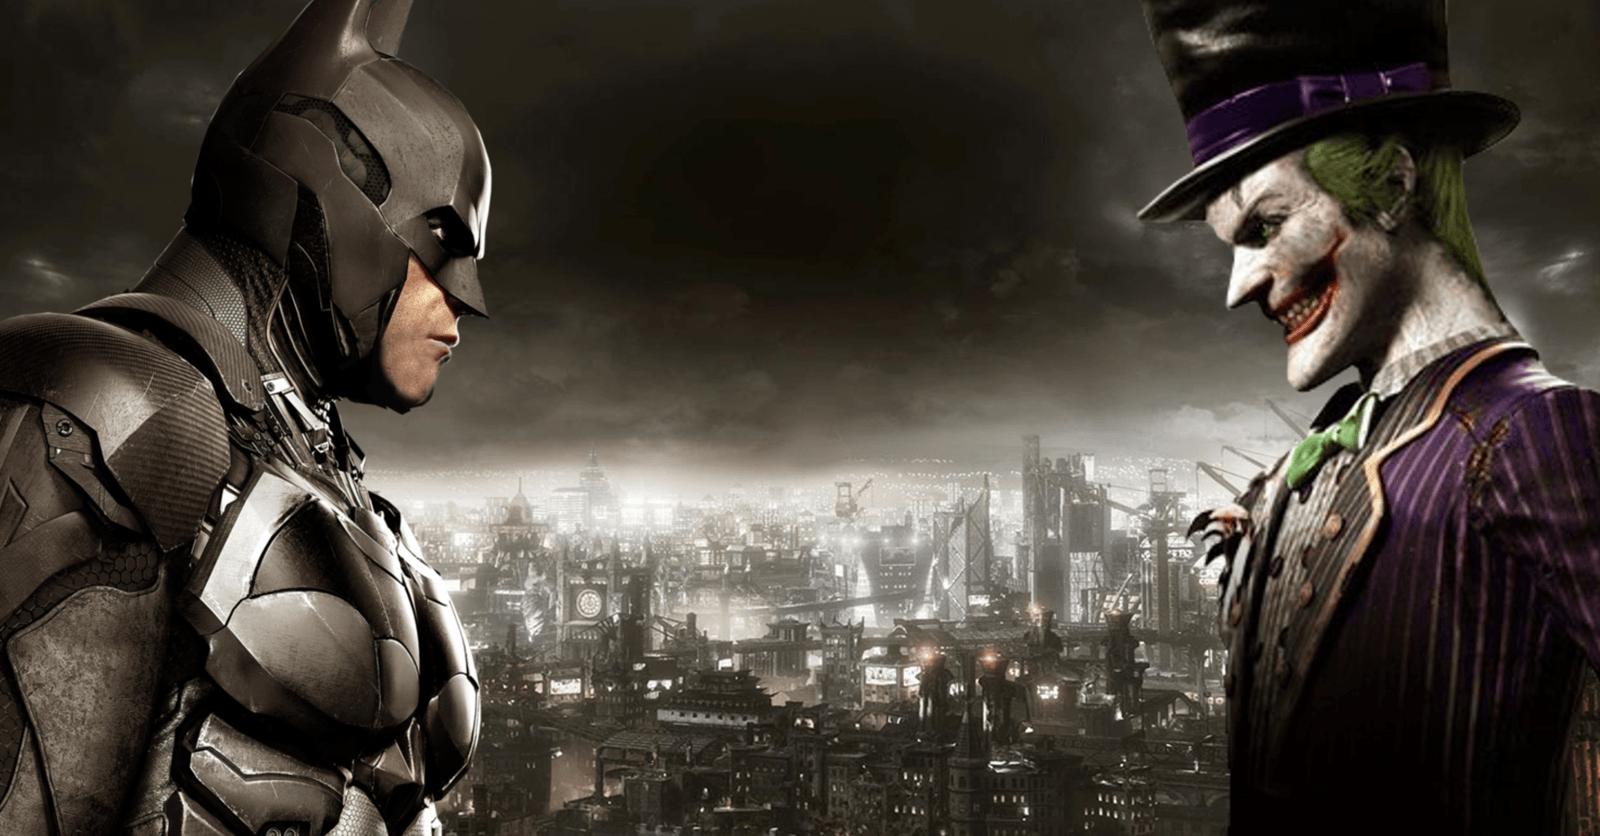 Batman vs joker HD wallpapers  Pxfuel